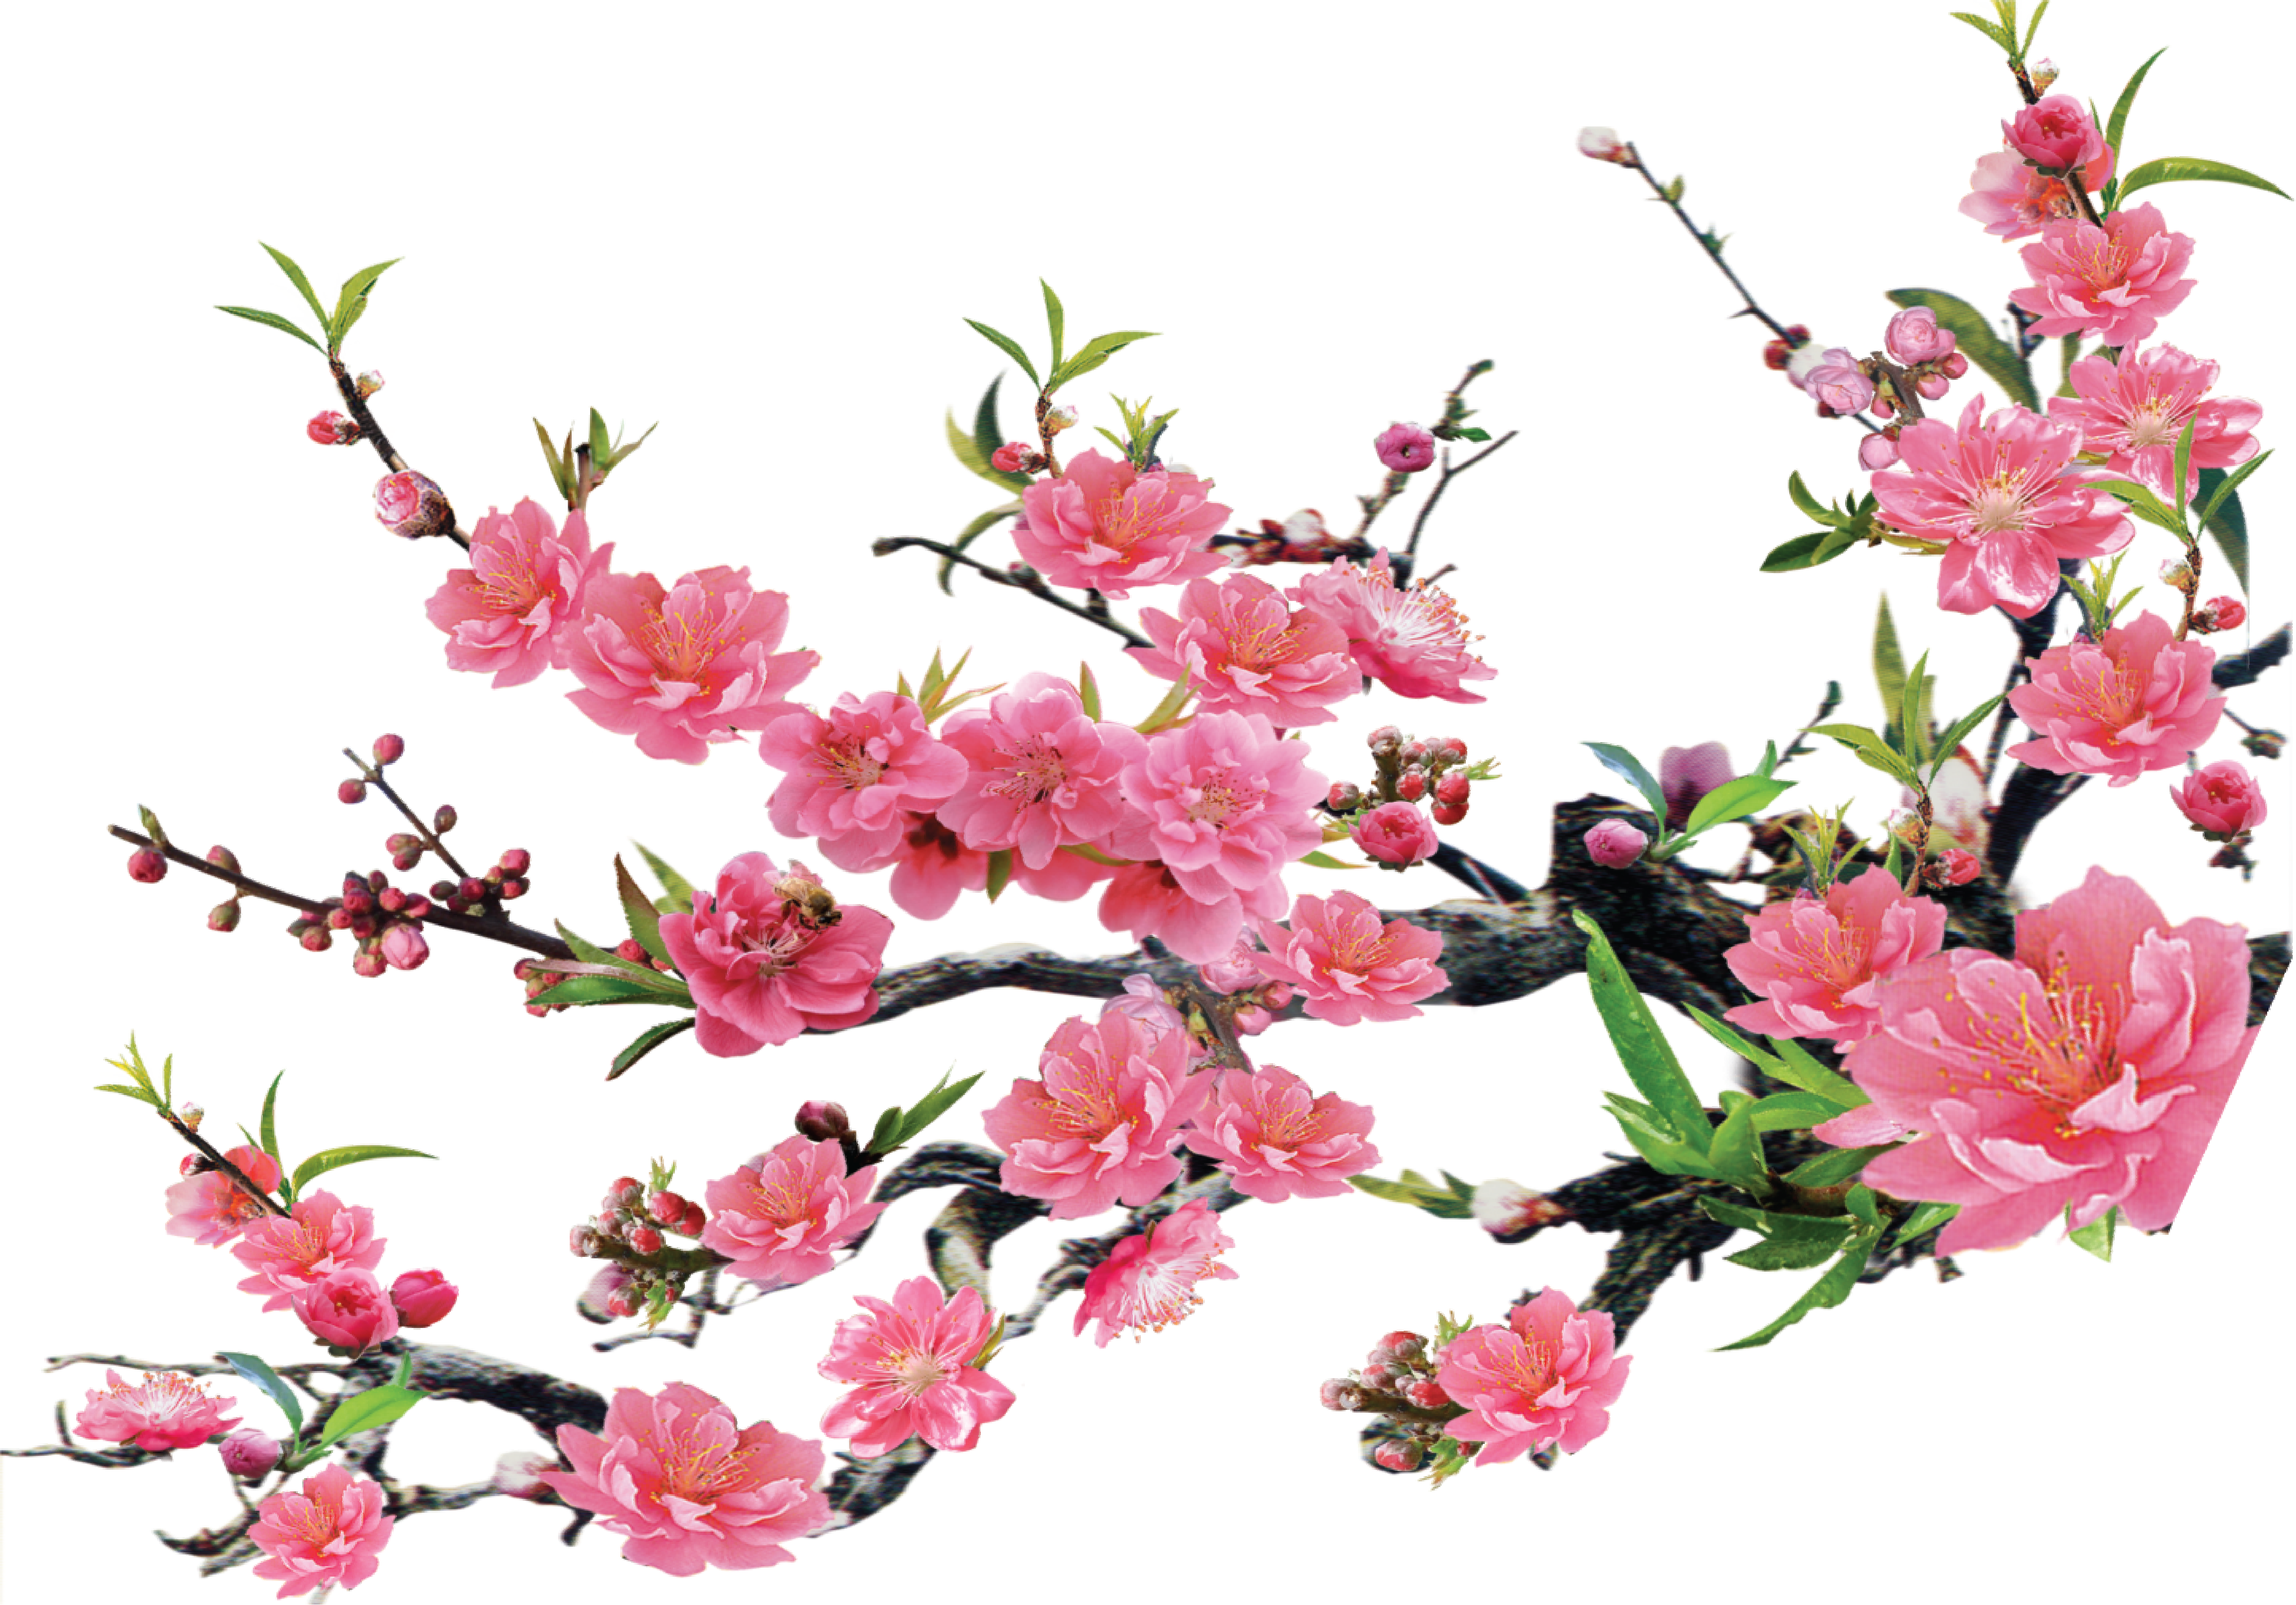 Hoa đào Tết được coi là biểu tượng của sự thịnh vượng và may mắn trong lễ Tết. Đây là một loại hoa đẹp và thơm ngát, làm cho mọi người cảm thấy hạnh phúc và tươi vui. Xem hình ảnh về hoa đào Tết để chiêm ngưỡng sự đẹp và tuyệt vời của chúng.